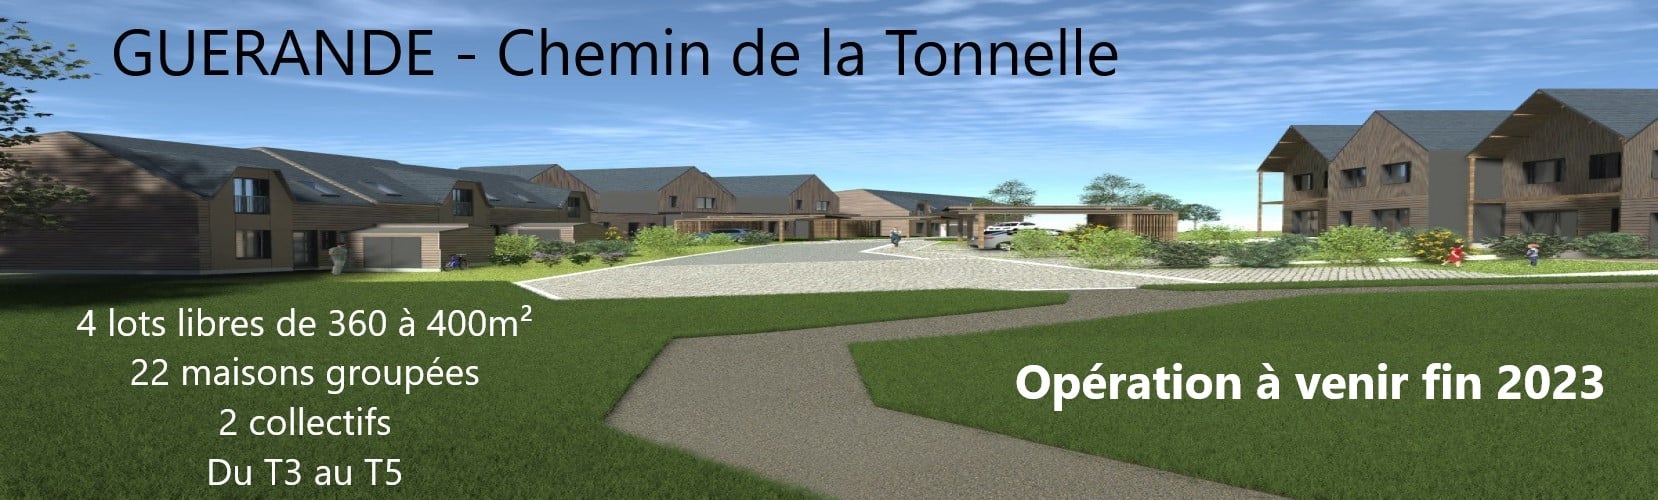 Guérande- Chemin de la Tonnelle